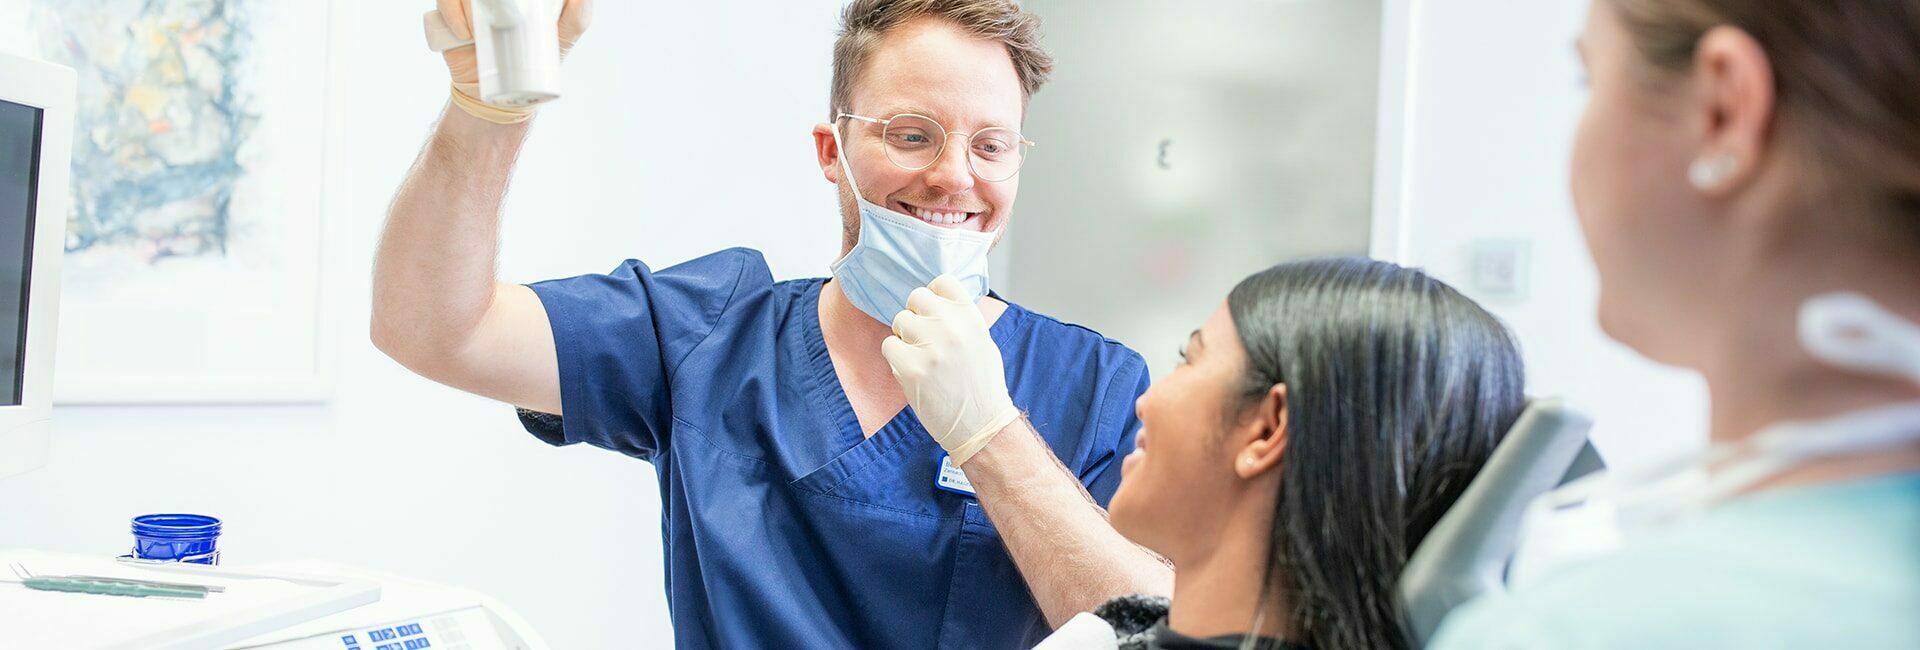 Zahnarzt lächelt Patientin an die auf dem Behandlungsstuhl sitzt